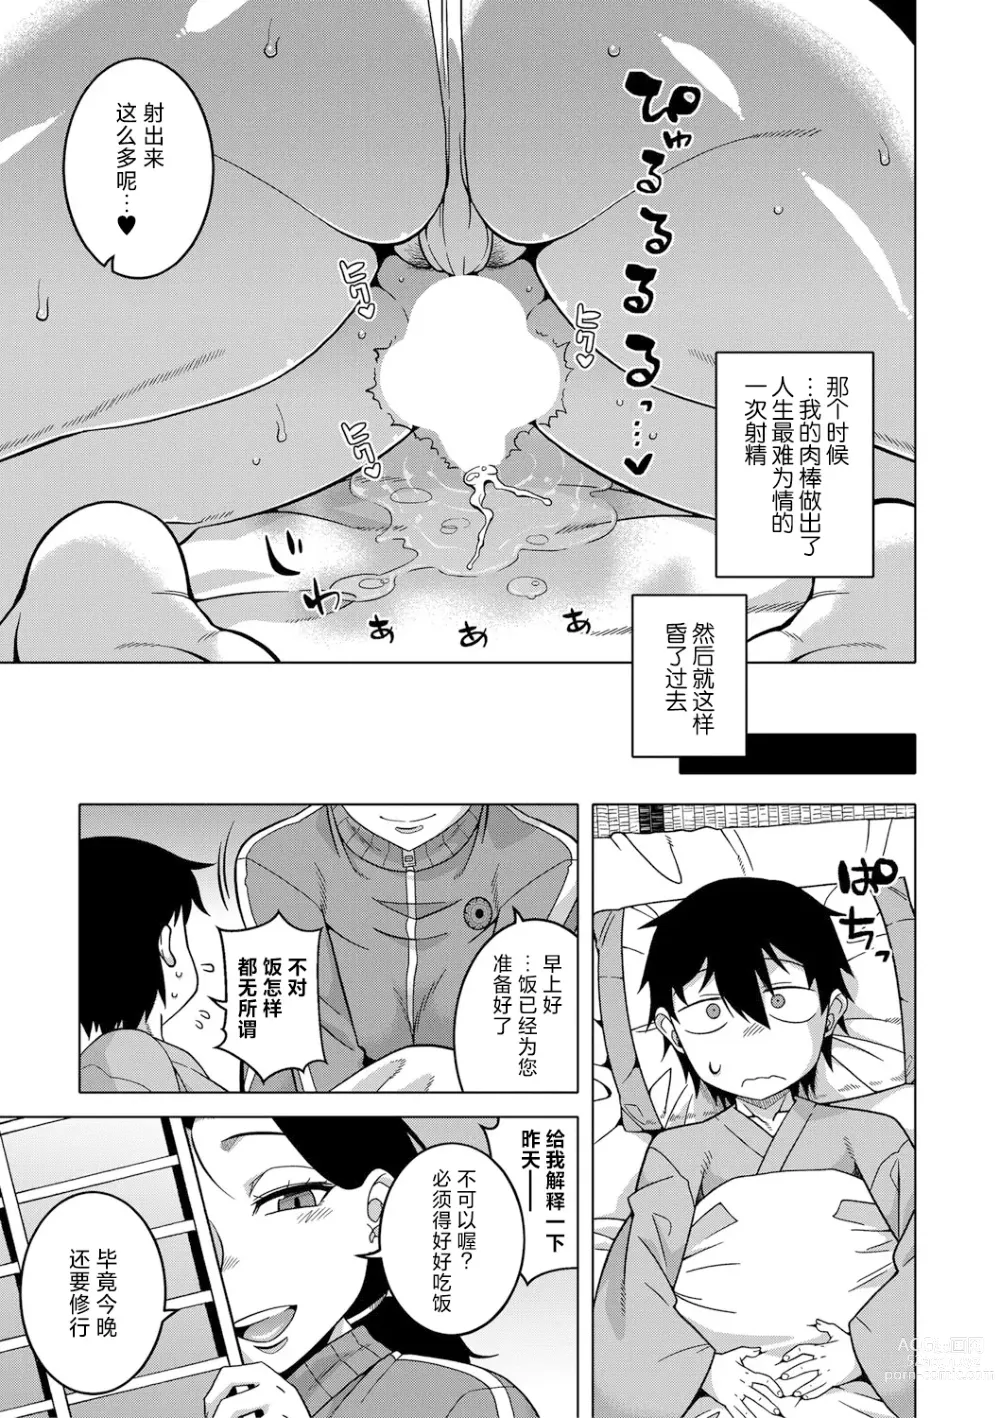 Page 20 of manga Kami-sama no Tsukurikata Ch. 1-5